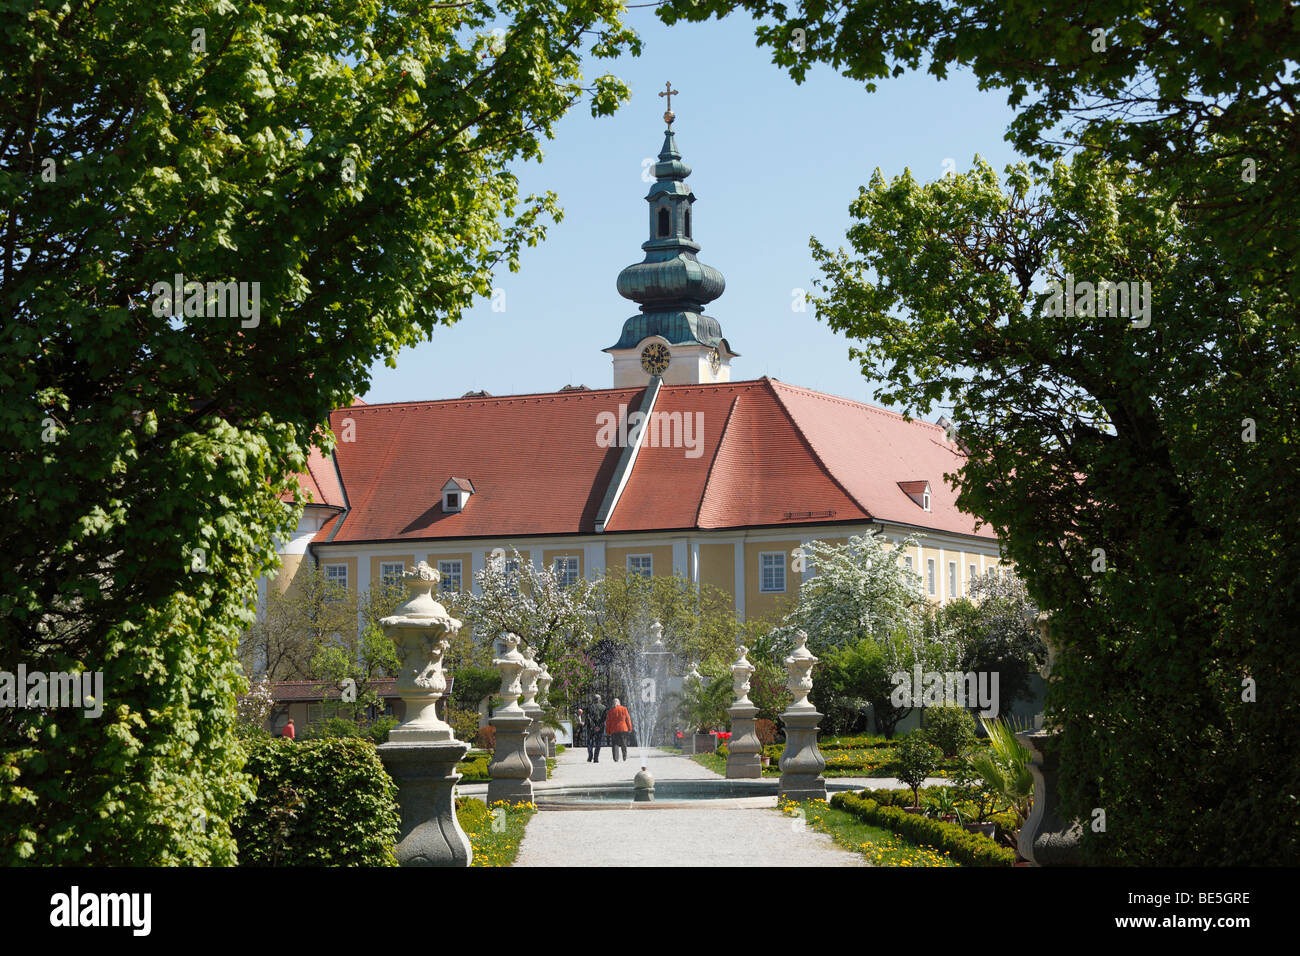 Kloster Seitenstetten monastero, Convent Garden, Mostviertel regione, Austria Inferiore, Austria, Europa Foto Stock